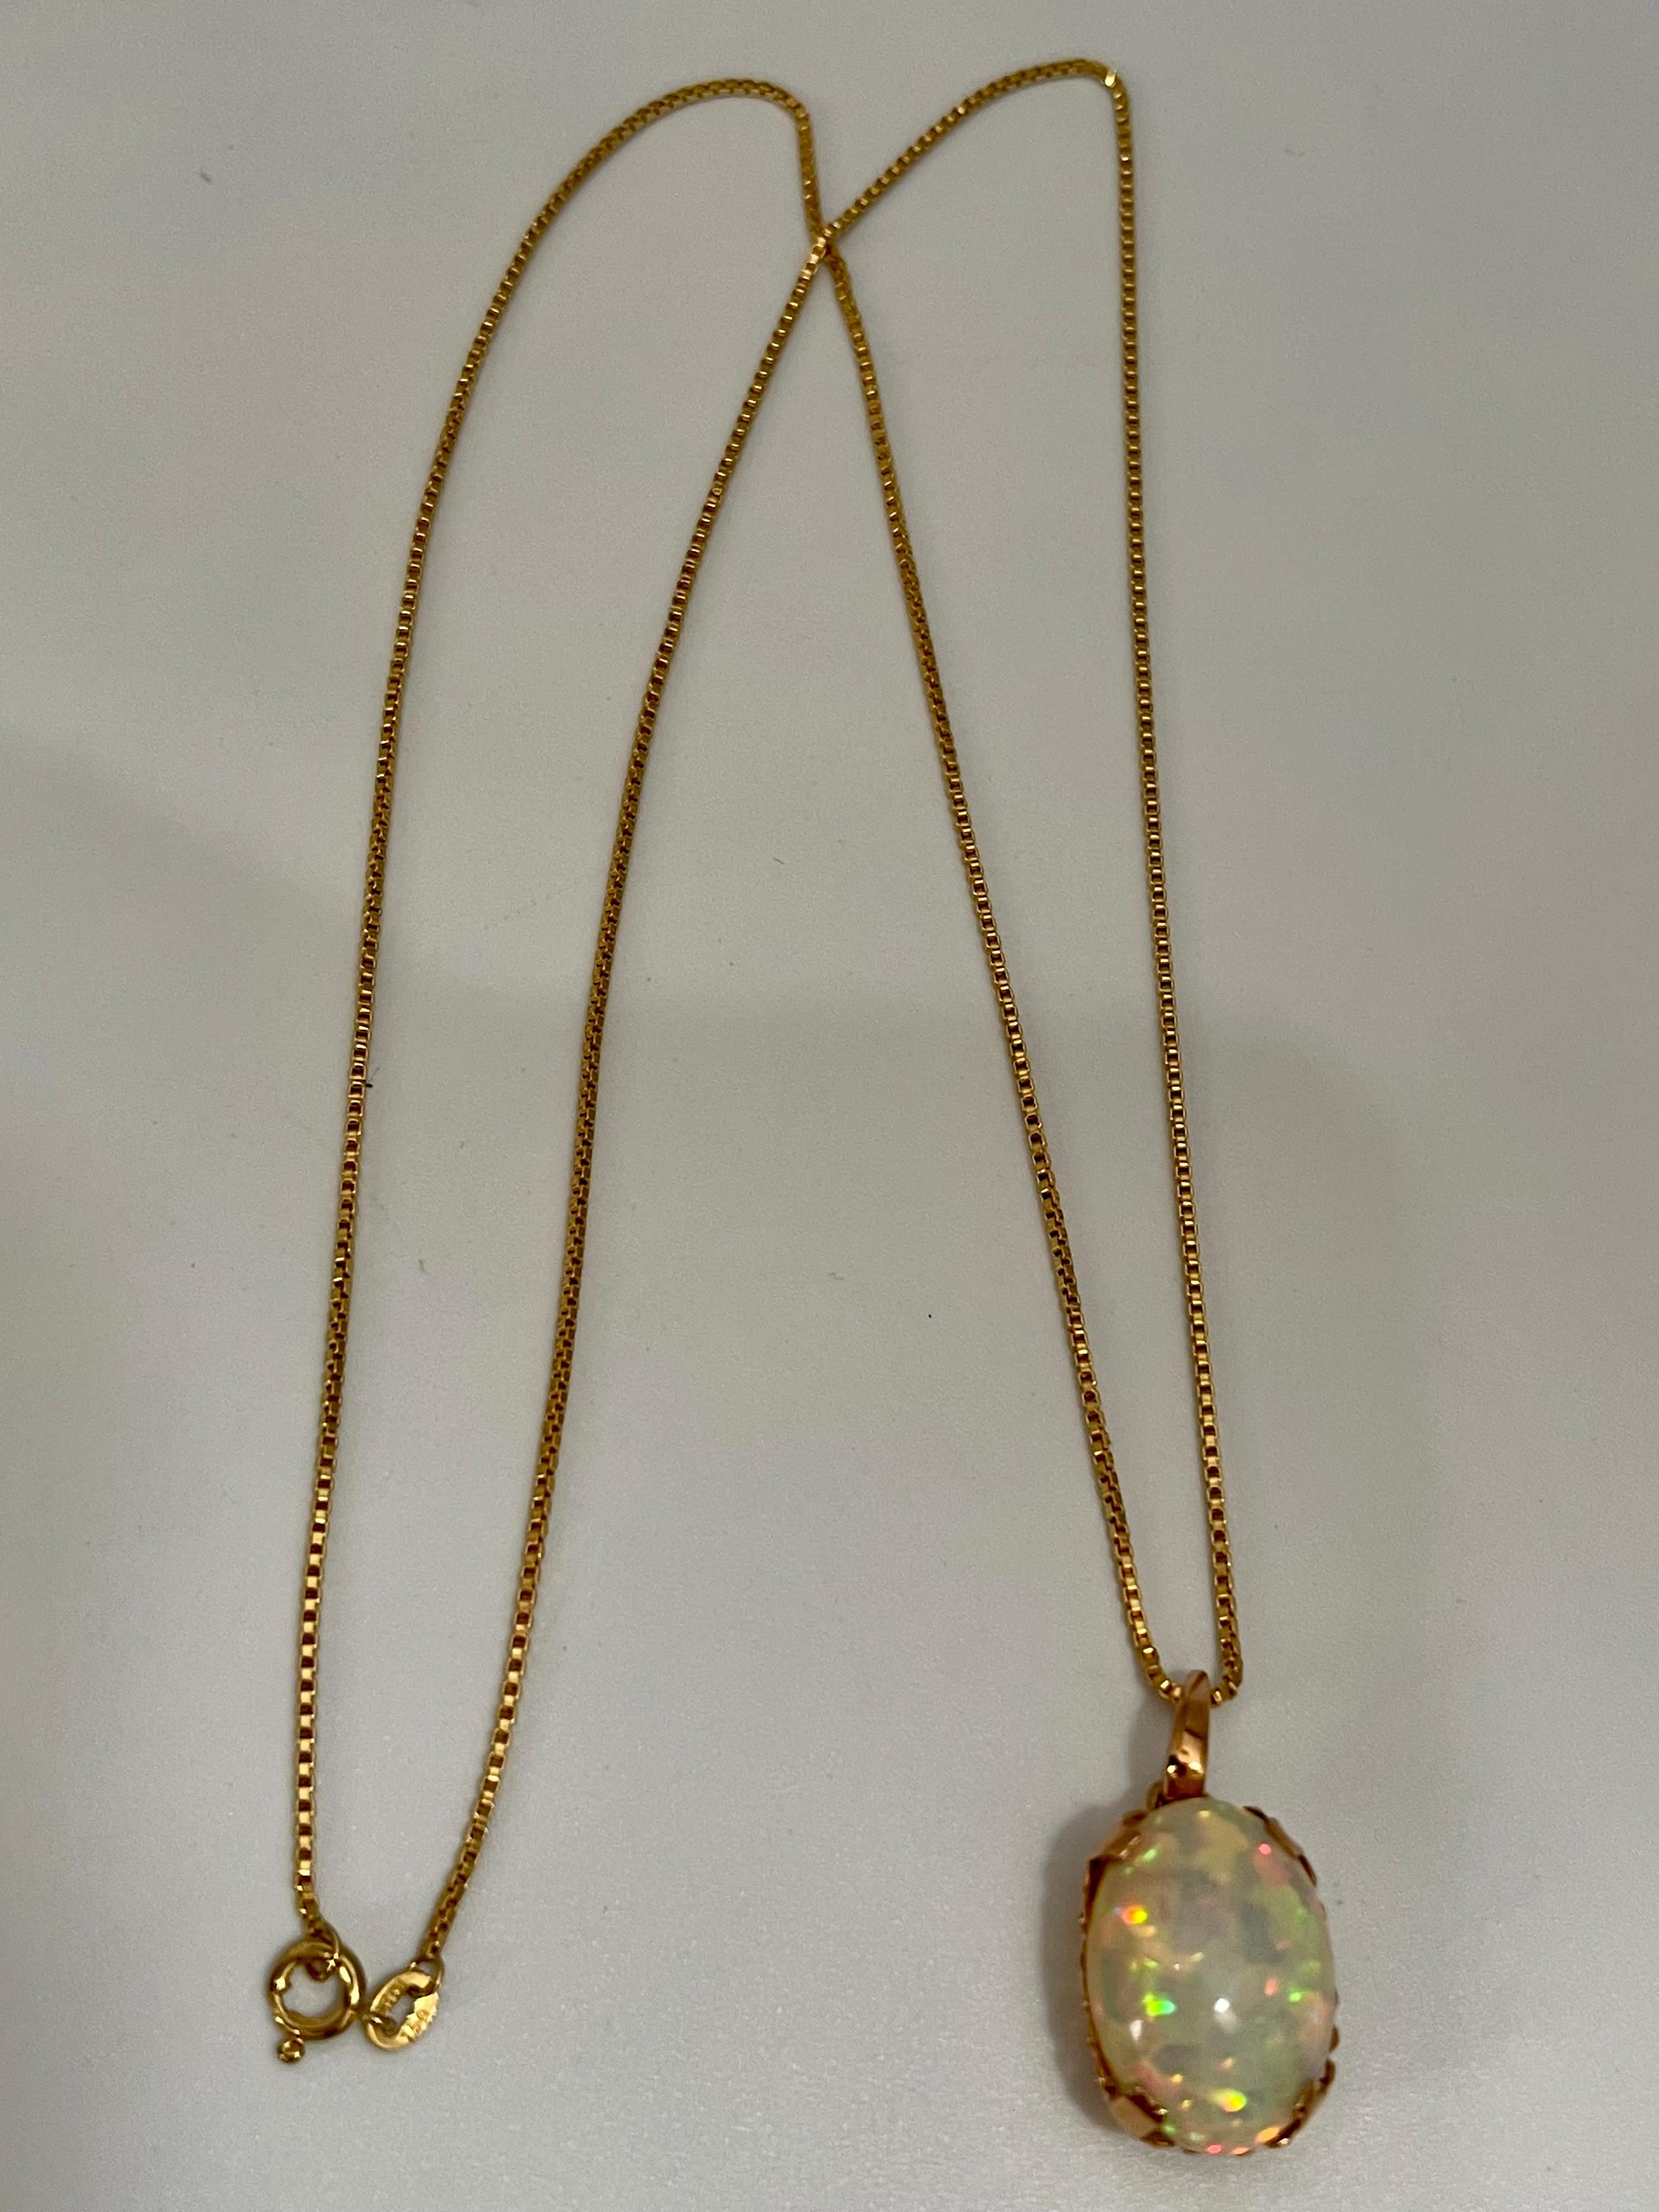 9 Carat Oval Ethiopian Opal Pendant / Necklace 18 Karat + 18 Kt Gold Chain 4